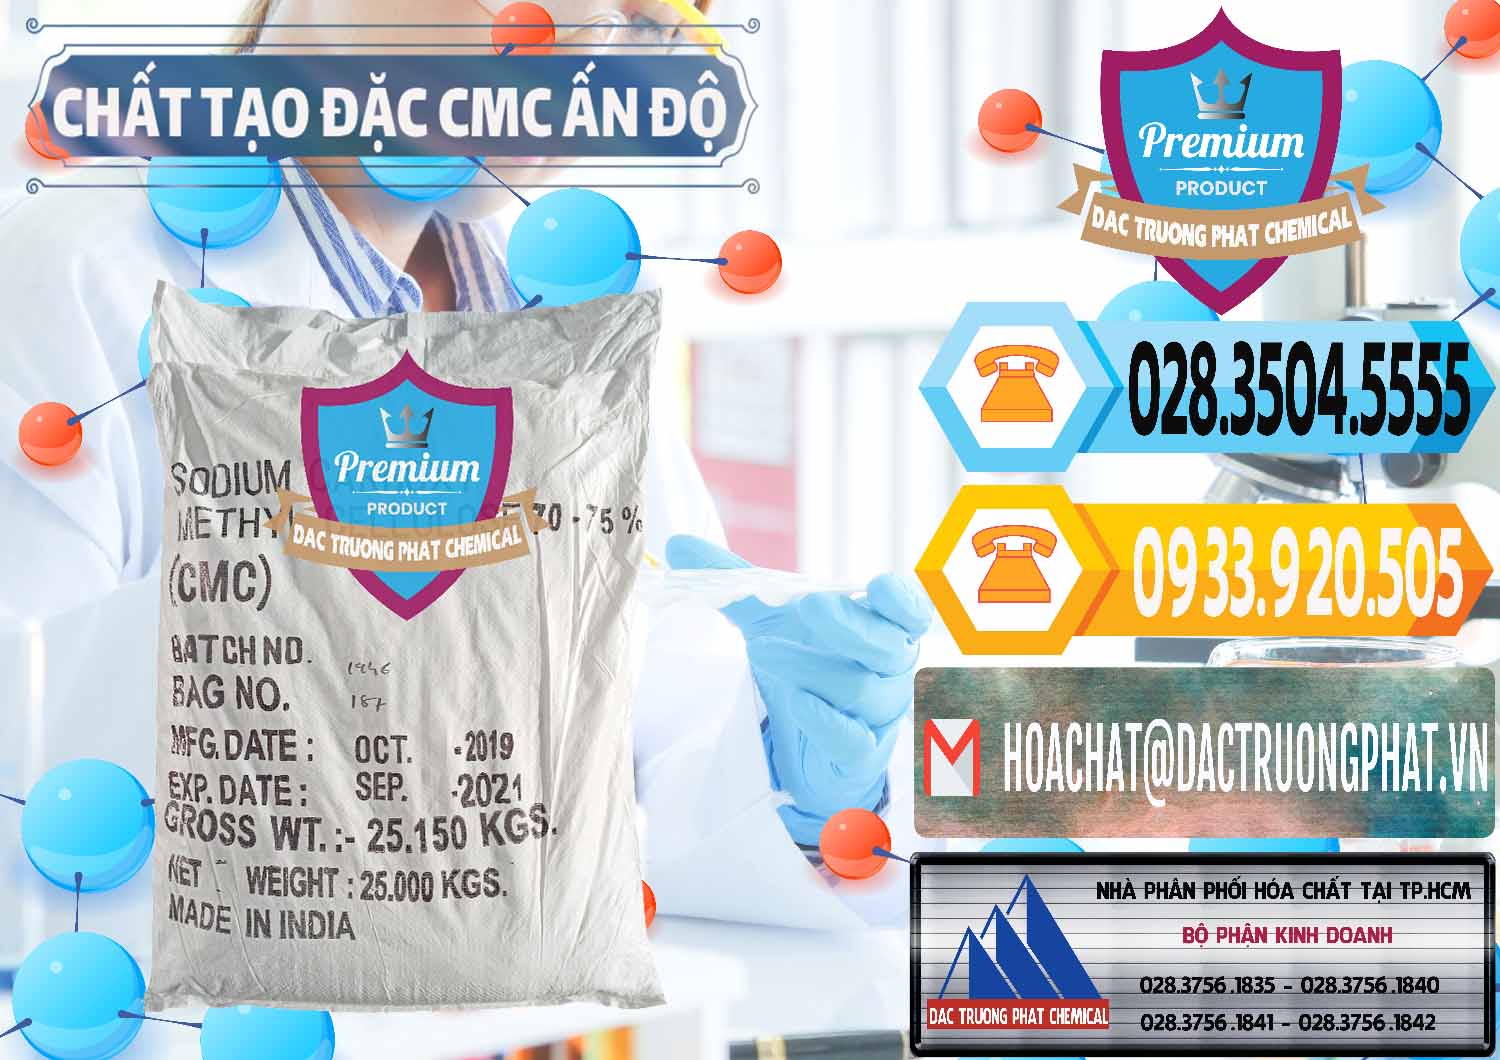 Cty chuyên nhập khẩu _ bán Chất Tạo Đặc CMC - Carboxyl Methyl Cellulose Ấn Độ India - 0044 - Nhà cung cấp _ phân phối hóa chất tại TP.HCM - hoachattayrua.net